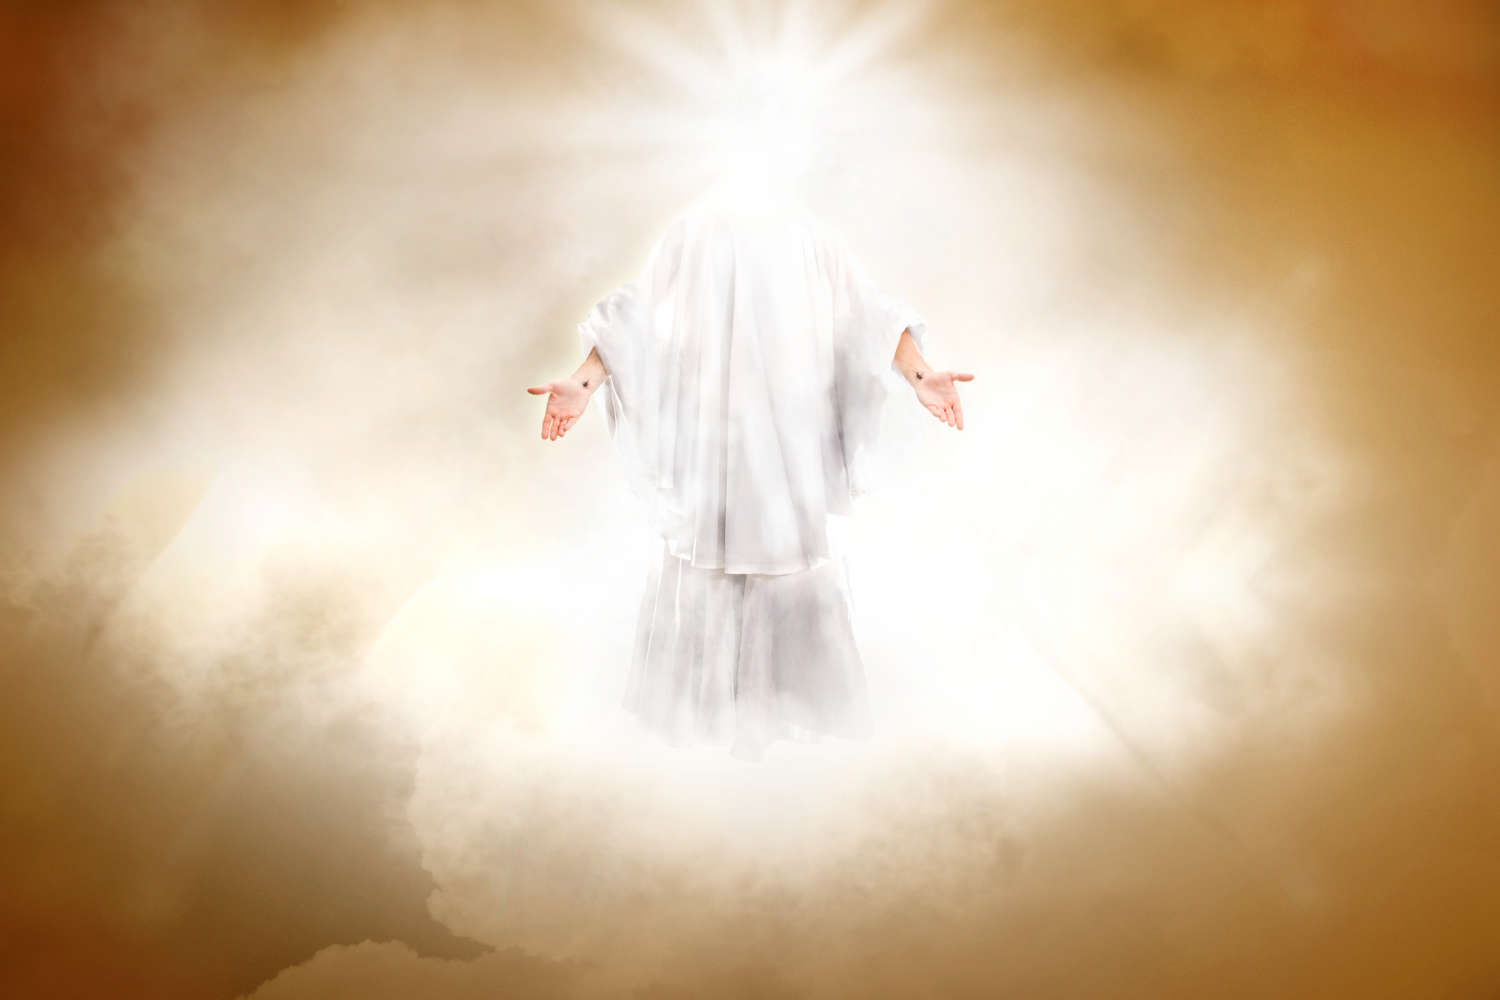 140-65c45658 Jesus - His ascension